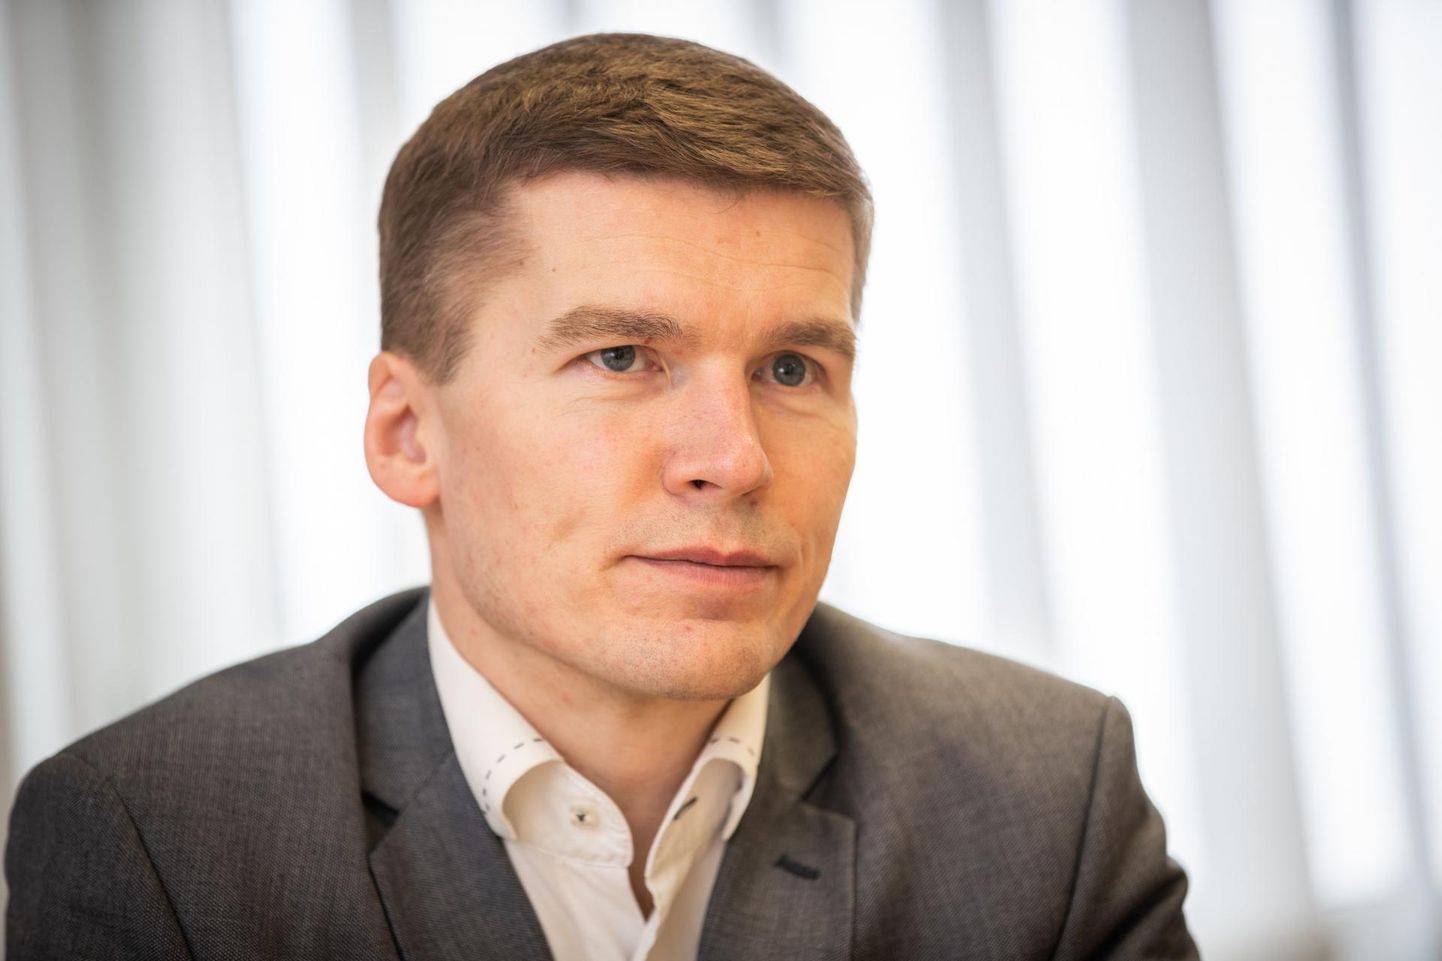 Riigi imfosüsteemi ameti (RIA) küberturvalisuse teenistuse juhi Lauri Aasmanni sõnul ilmnes Eestis uut tüüpi arvepettus.